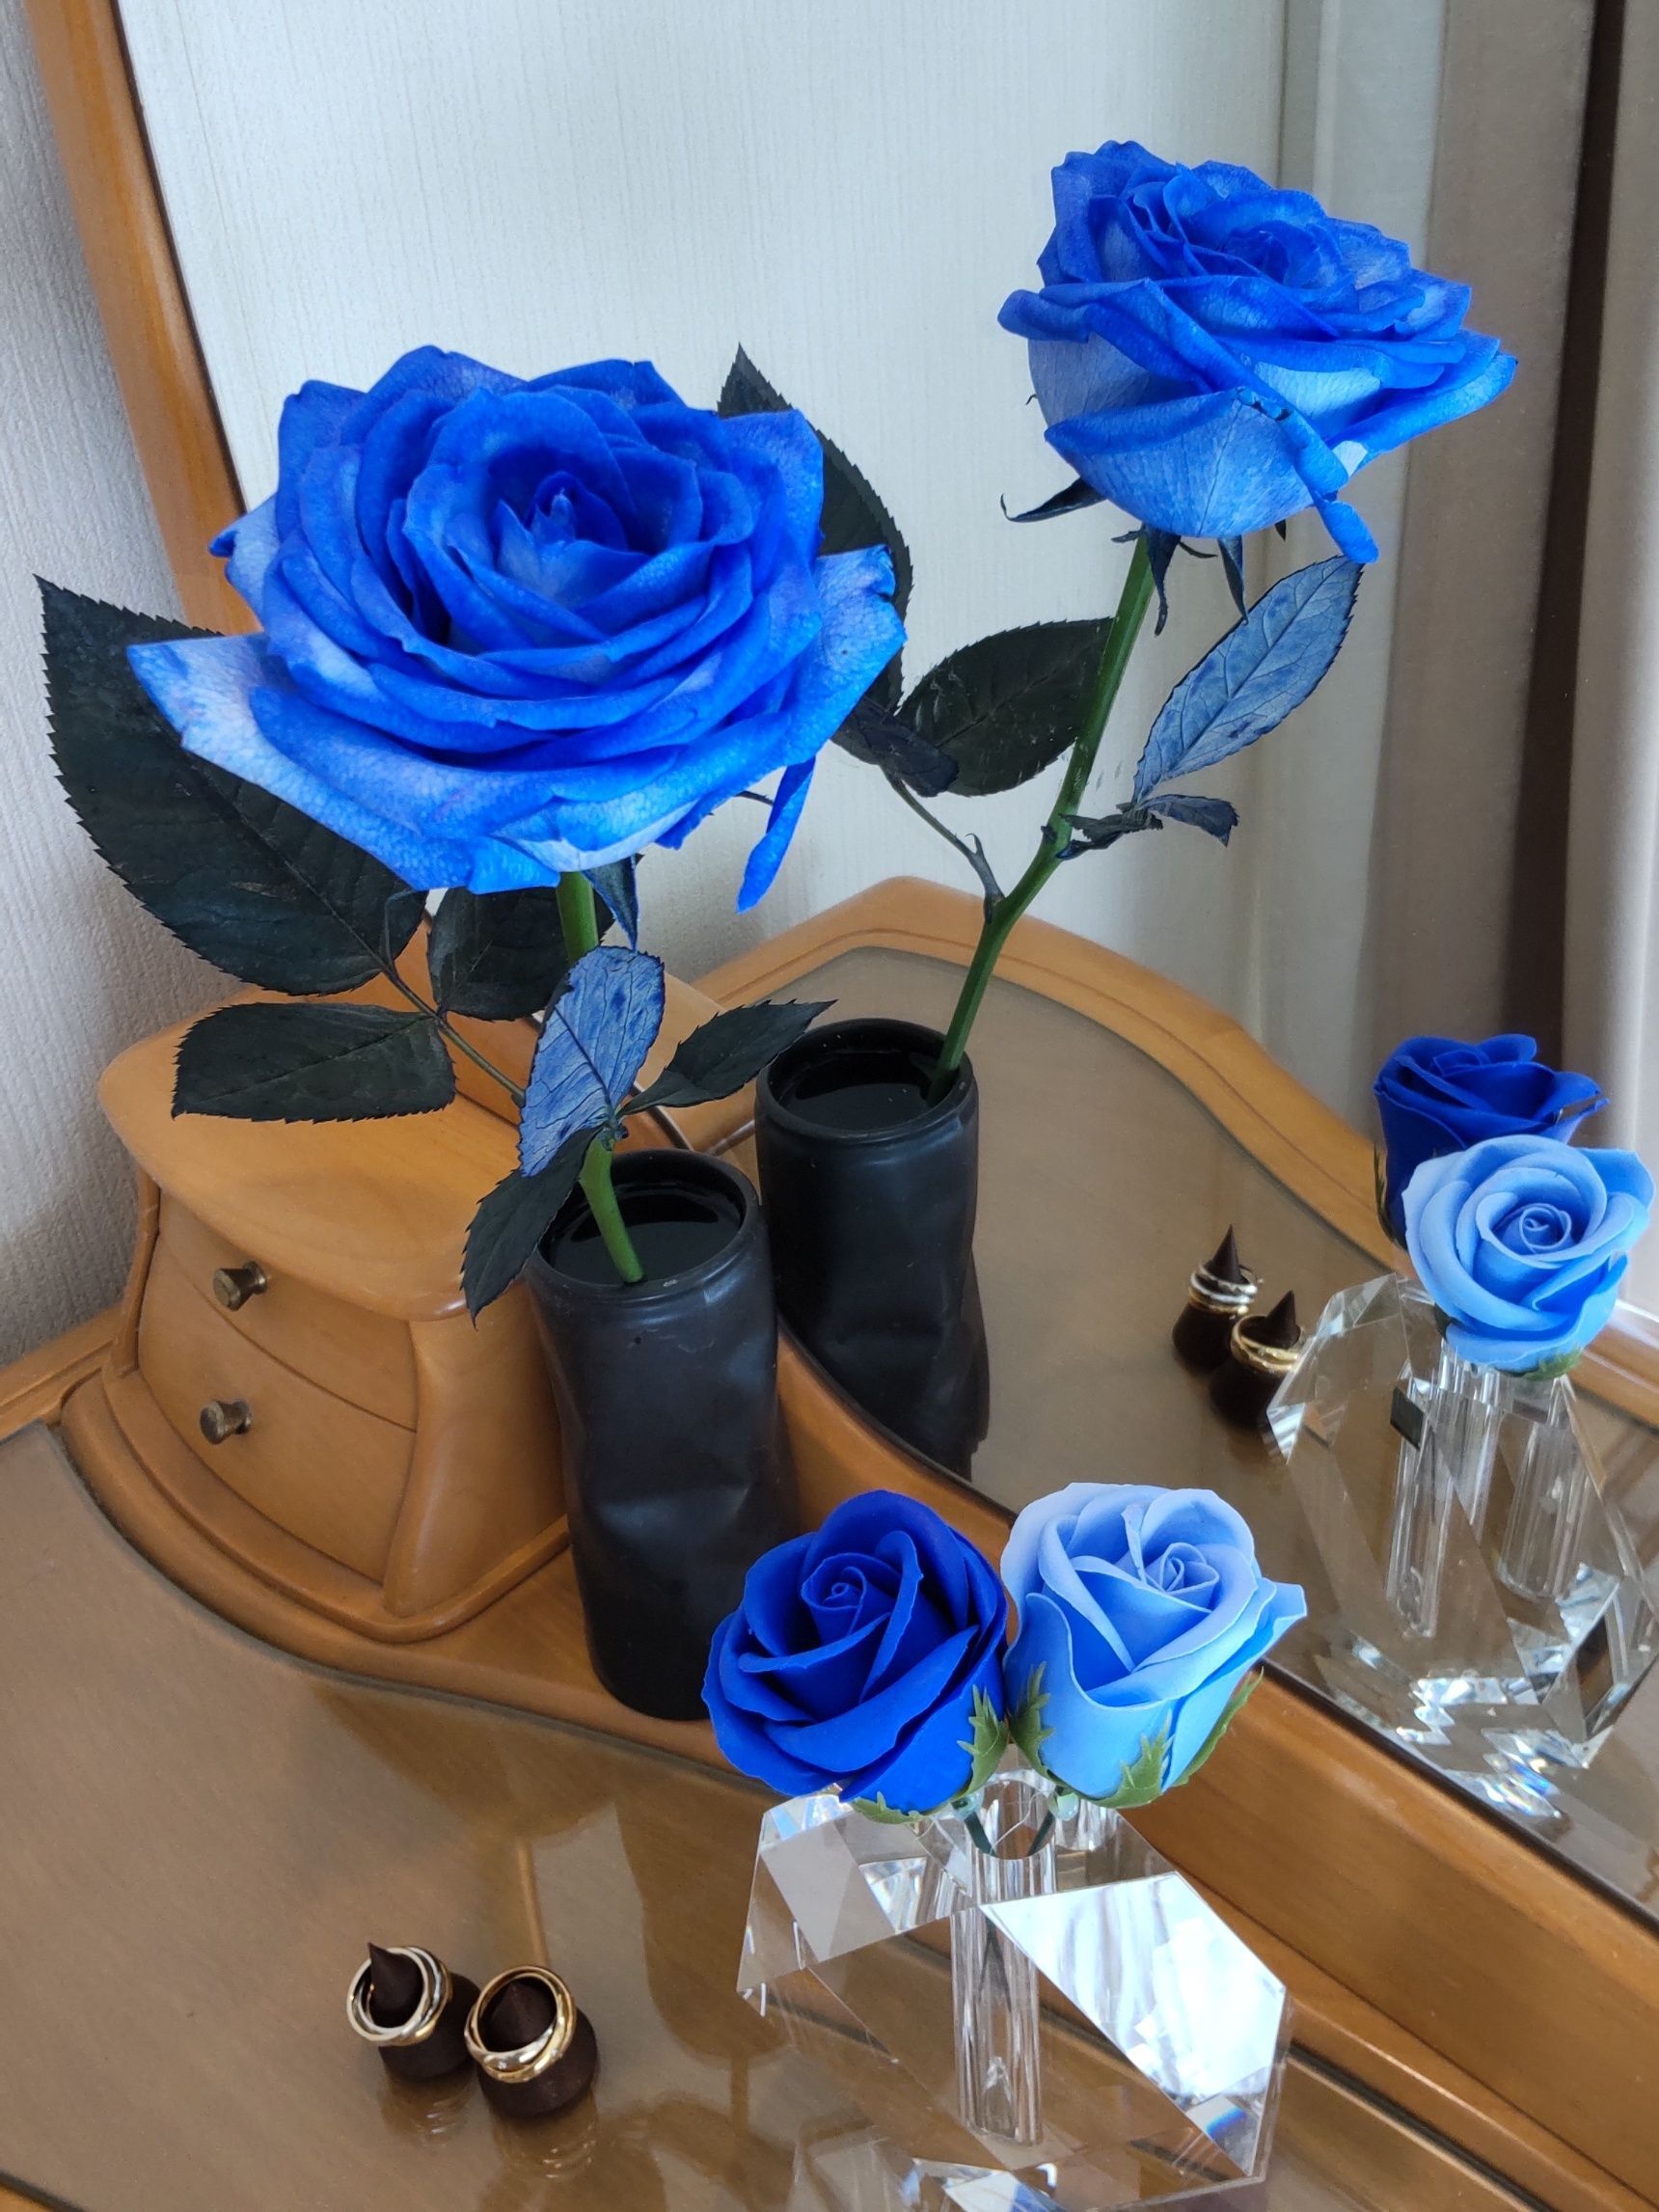 青い薔薇は、スリョンさんが好きな花だったと終盤に分かります。青い薔薇は、「奇跡」や「夢叶う」なんて花言葉があります。